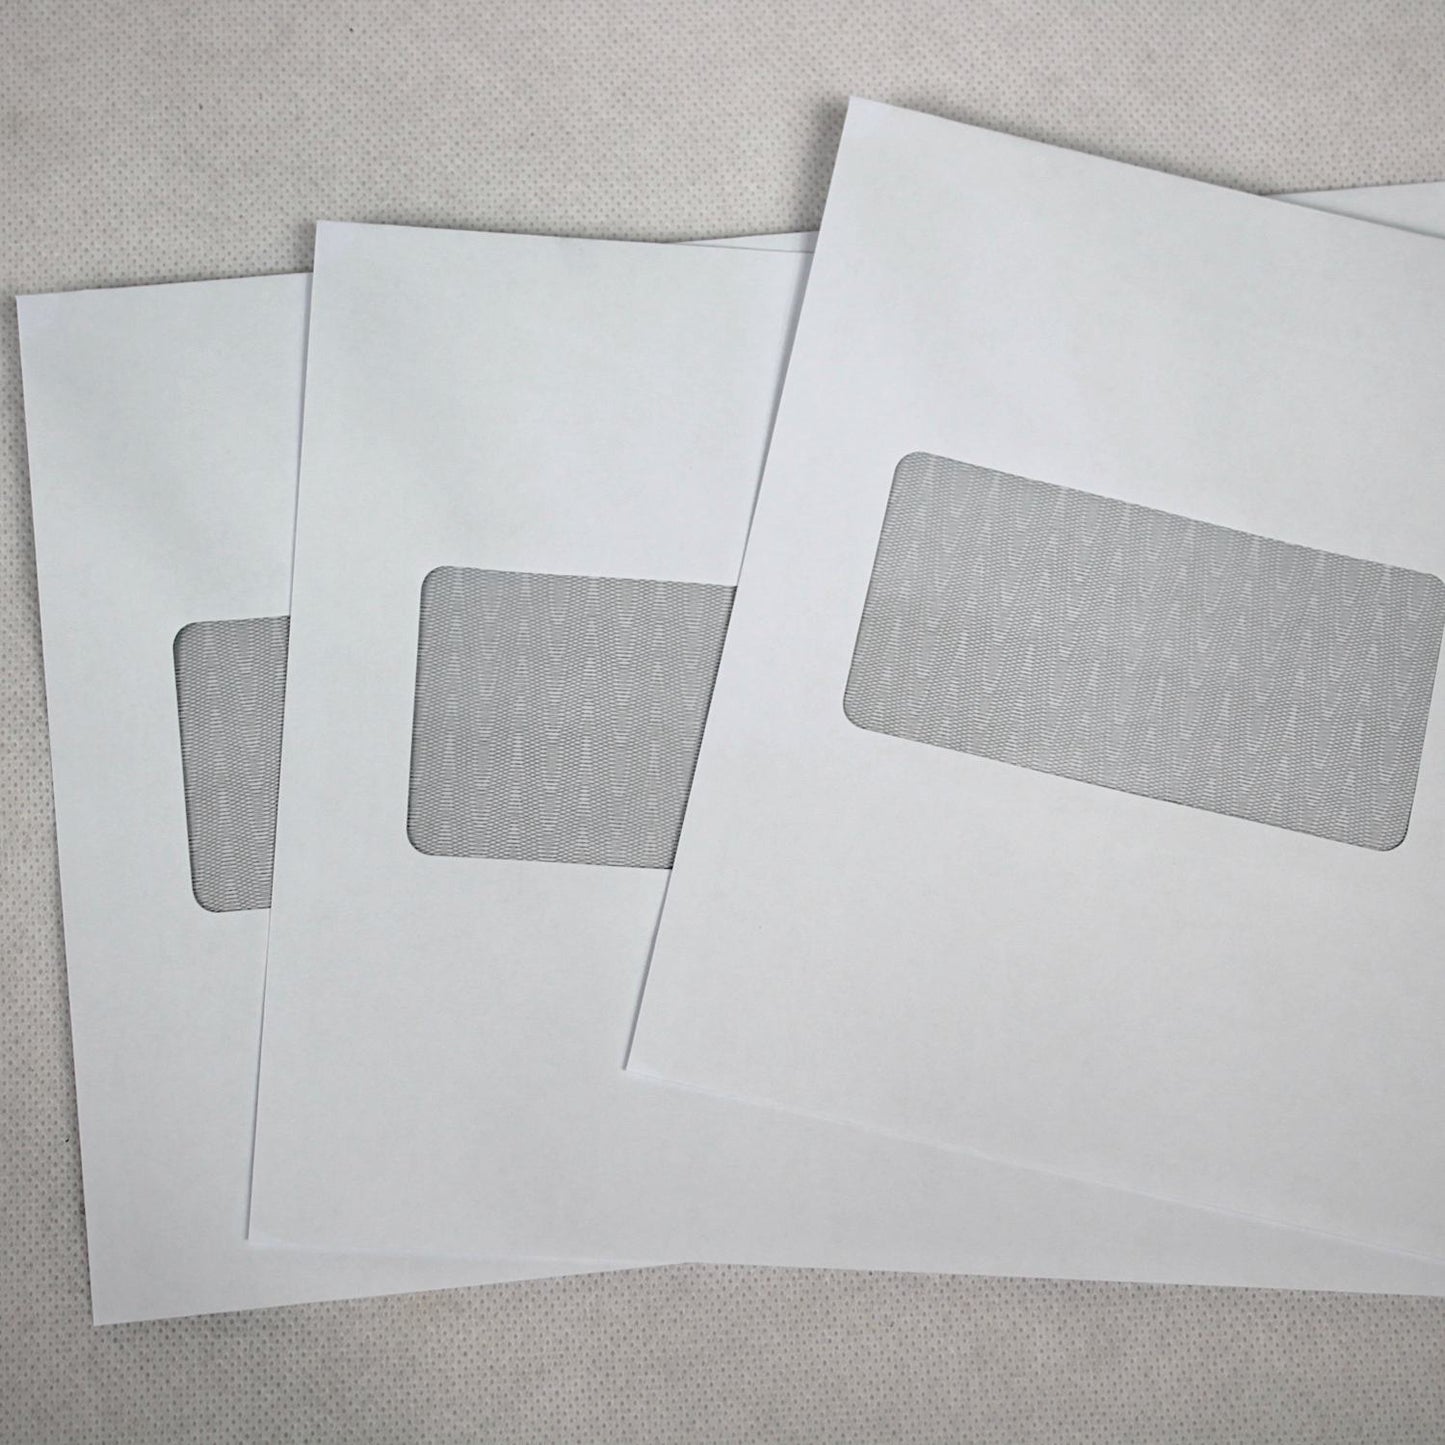 162x238mm C5+ White Gummed Envelopes (Window 45x90mm / 20mm left, 60mm up)